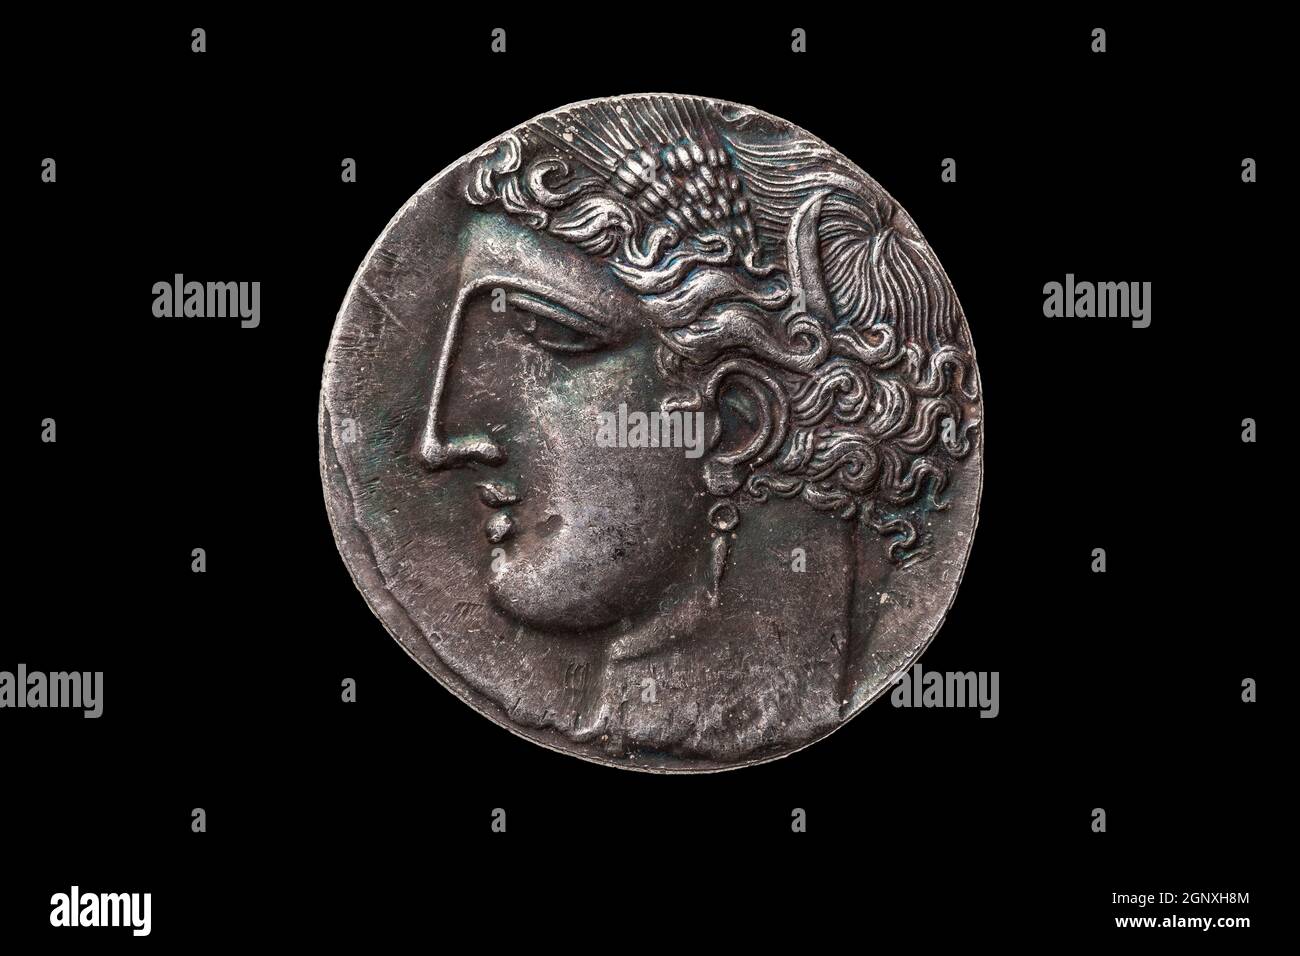 Silver 5 shekel Carthaginian pièce de réplique avec le portrait de Tanit la déesse du ciel et le cheval ailé Pegasus au dos de la première Guerre Punique Banque D'Images